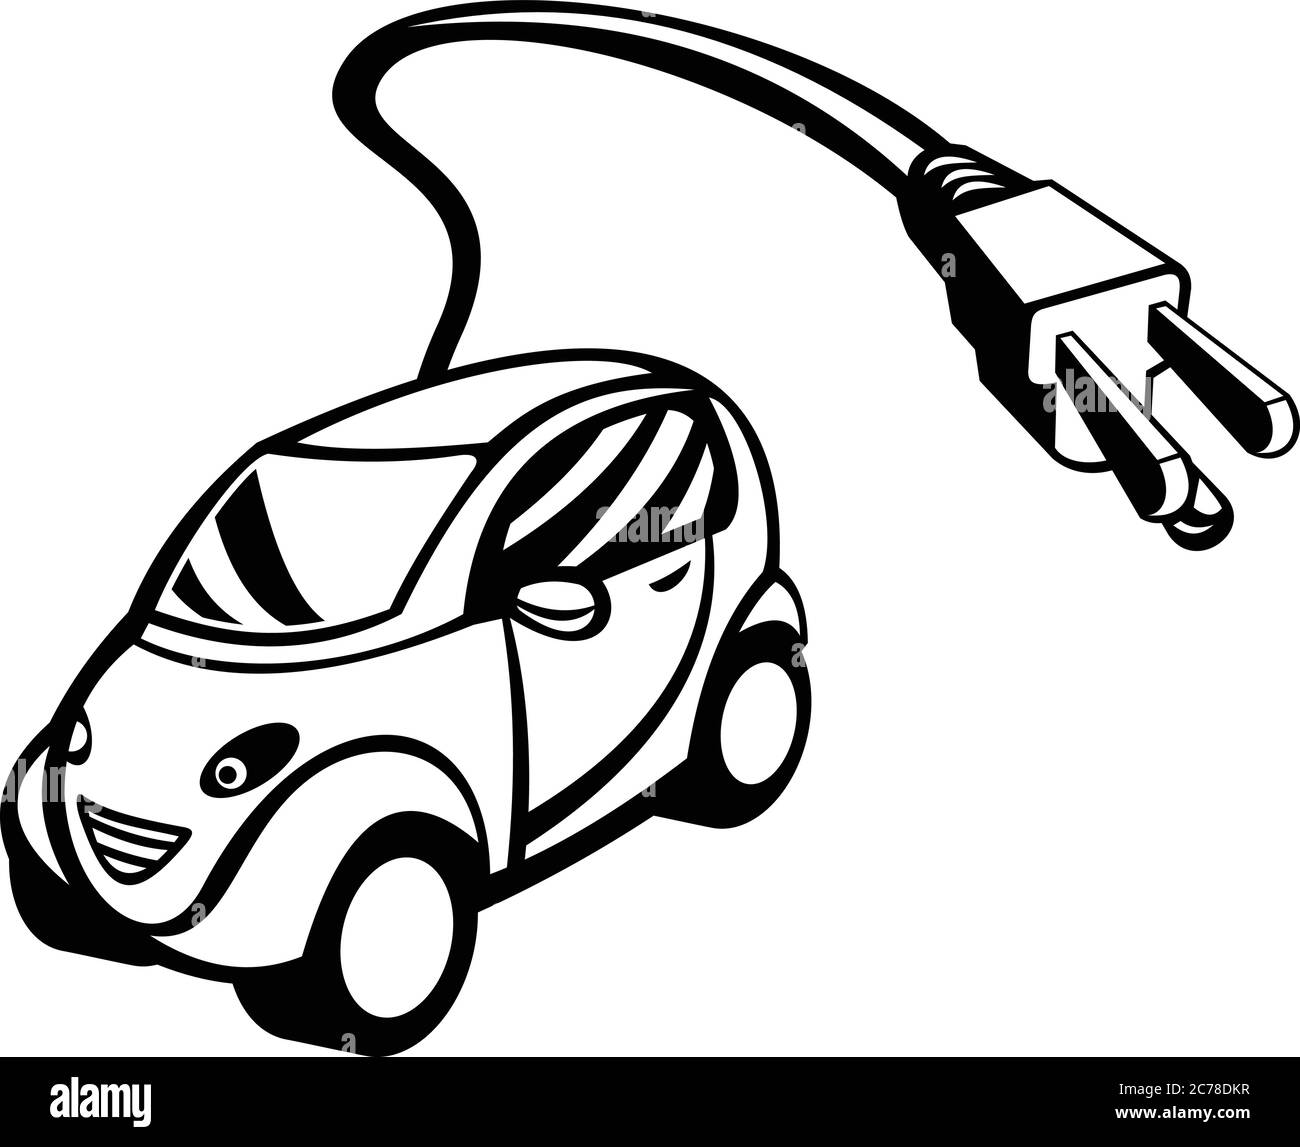 Illustration rétro de style noir et blanc d'un véhicule électrique ou d'une voiture verte, un transport de passagers alimenté par l'électricité renouvelable pour slash greenhou Illustration de Vecteur